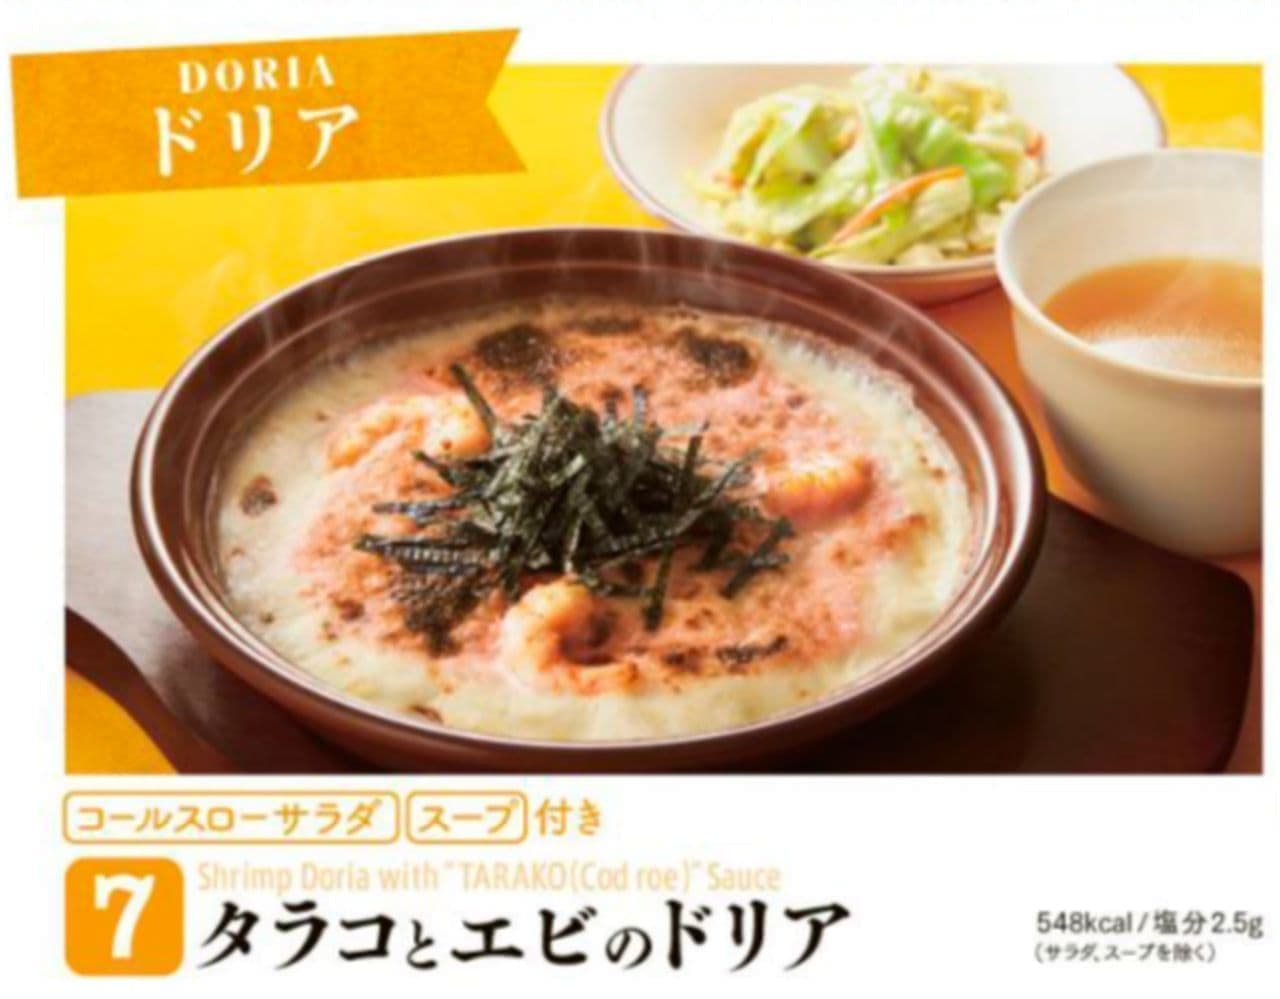 Saizeriya "Tarako and Shrimp Doria"